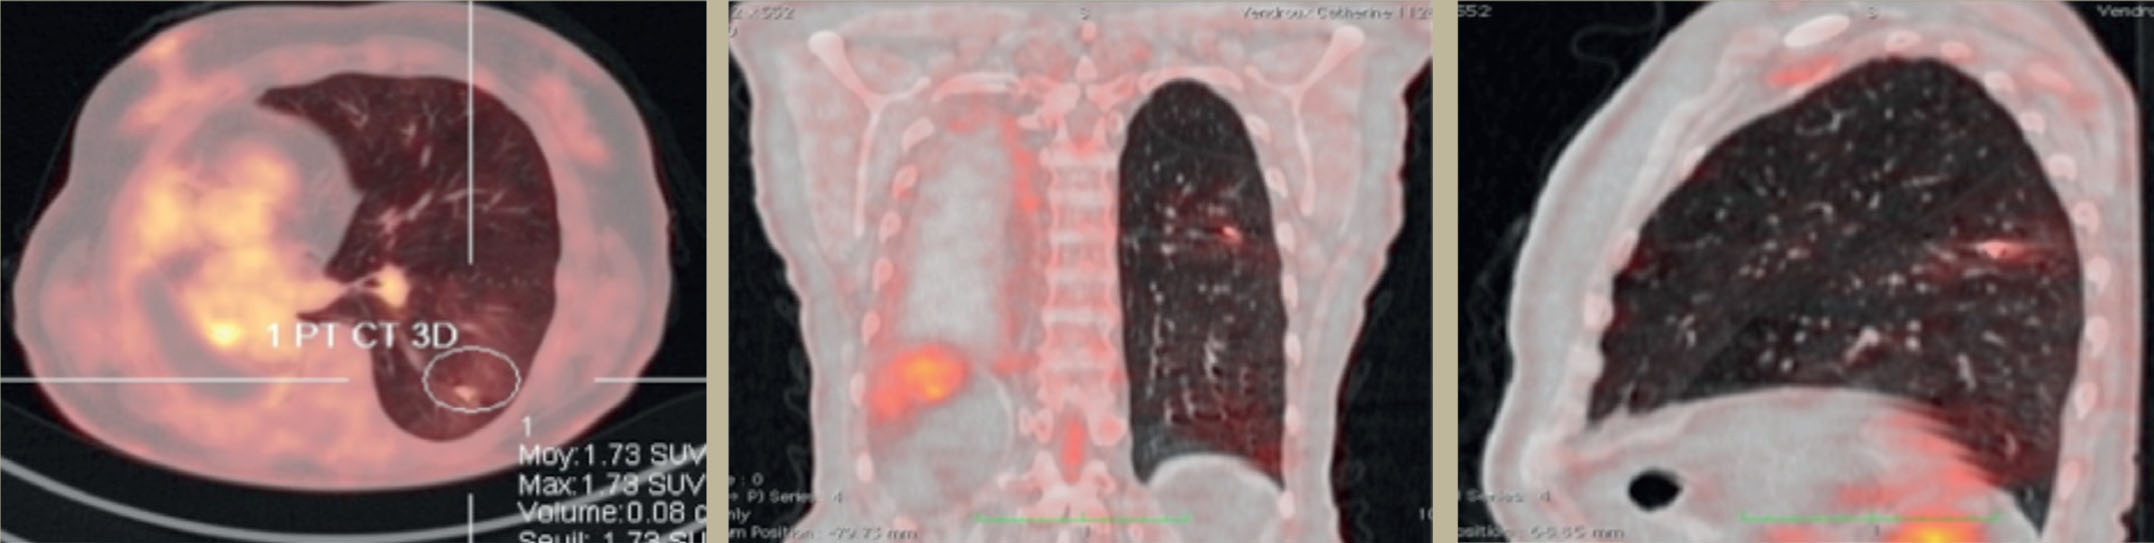 Traitement d'un cancer du poumon par radiothérapie stéréotaxique - Figure 4